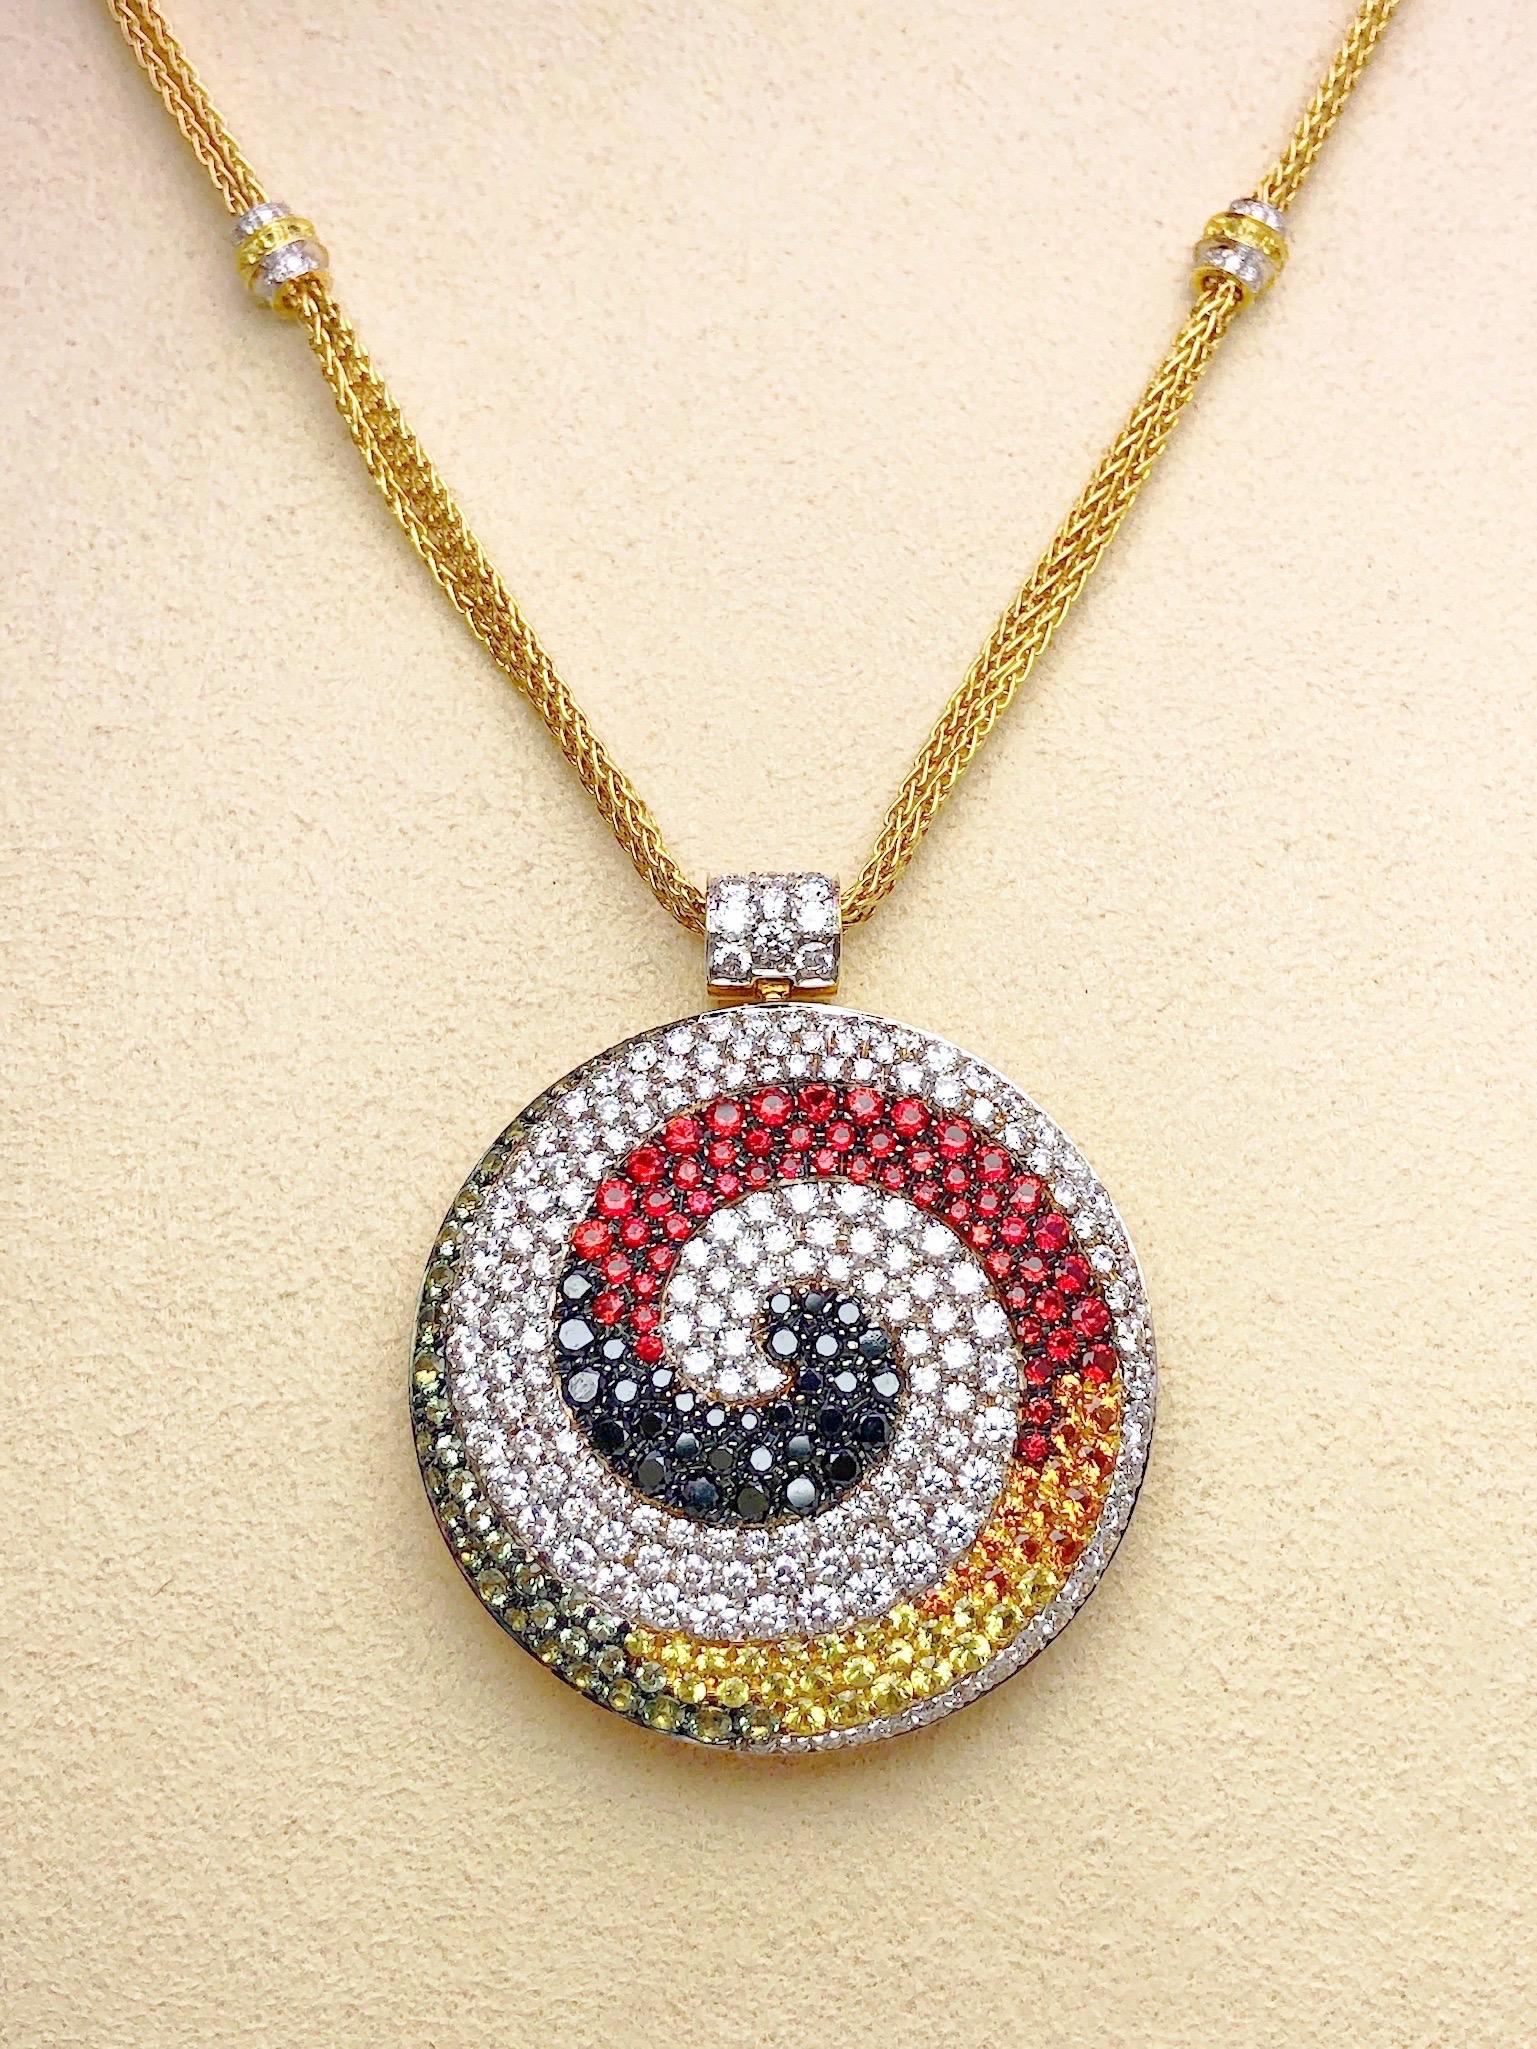 Ce collier a été conçu par Valente de Milan, en Italie. Le grand pendentif circulaire est serti dans un motif tourbillonnant de diamants ronds brillants blancs et noirs et de saphirs multicolores dans des tons de jaune, orange, rouge et vert clair.